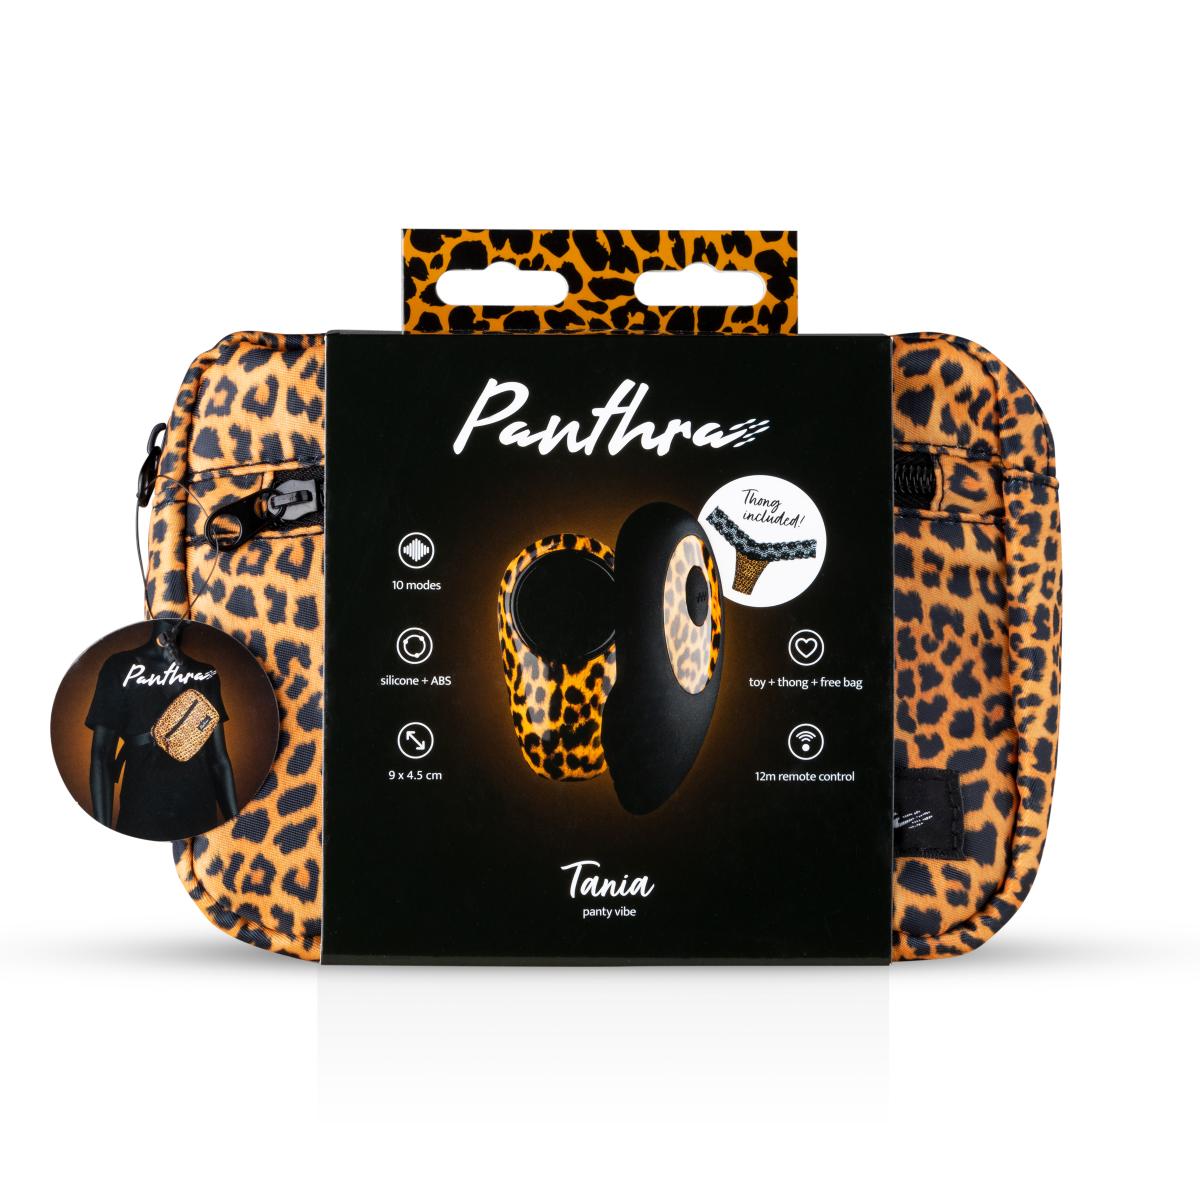 Вибровкладка в трусики в косметичке EDC Panthra Tania, леопардовый/черный, OS